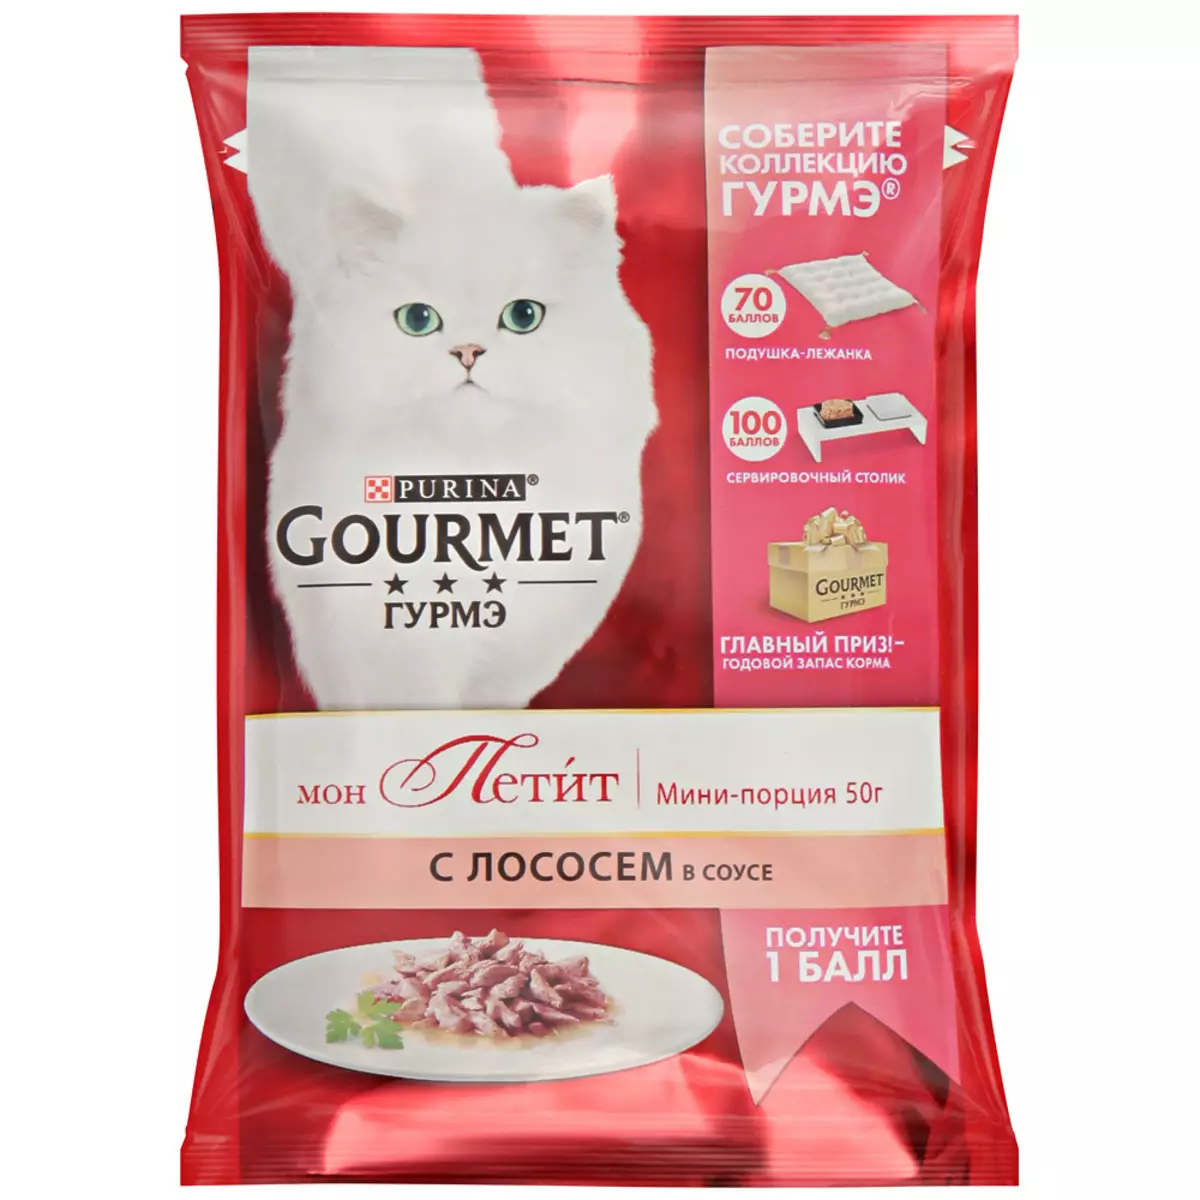 Gourmet: pakan kucing dan kucing purina, pate basah dan makanan kaleng kucing lainnya, komposisi mereka, ulasan 22711_38